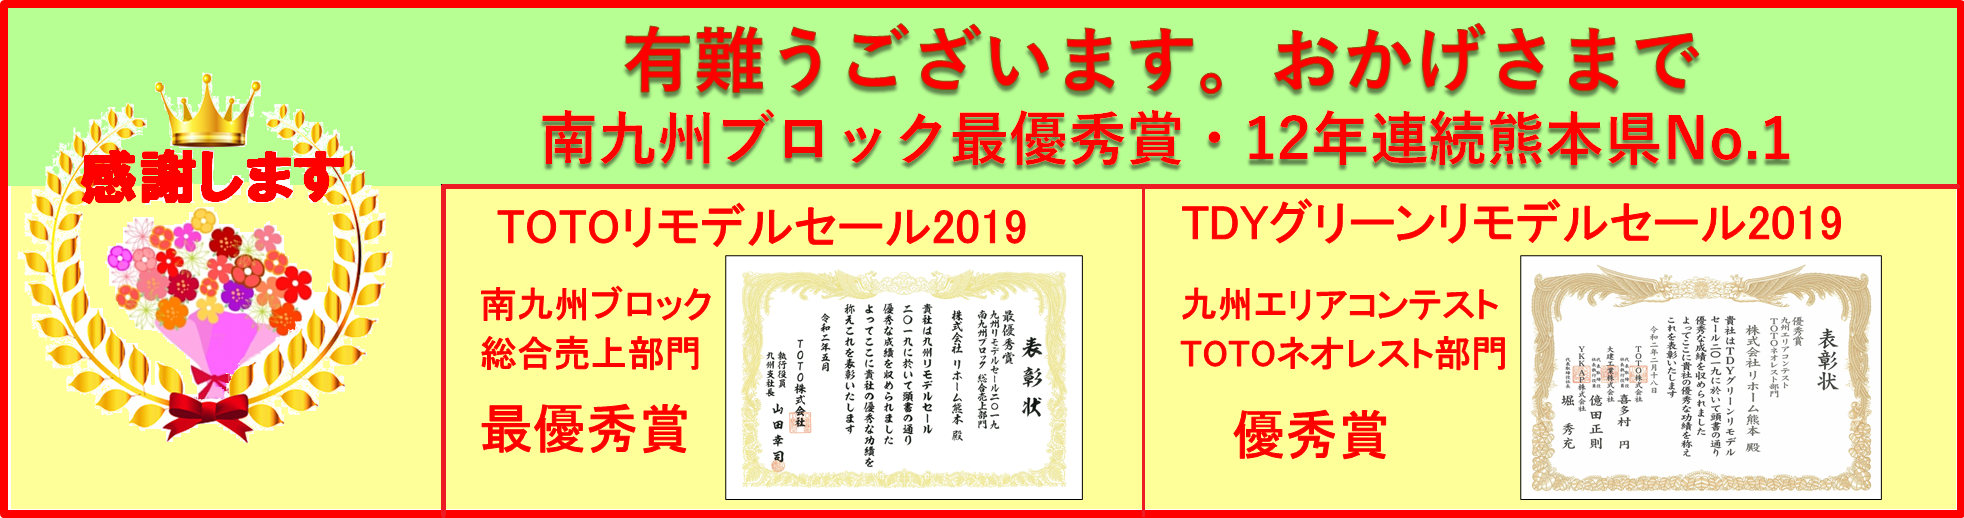 Toto九州リモデルセール19 最優秀賞 感謝します 株式会社リホーム熊本のブログ